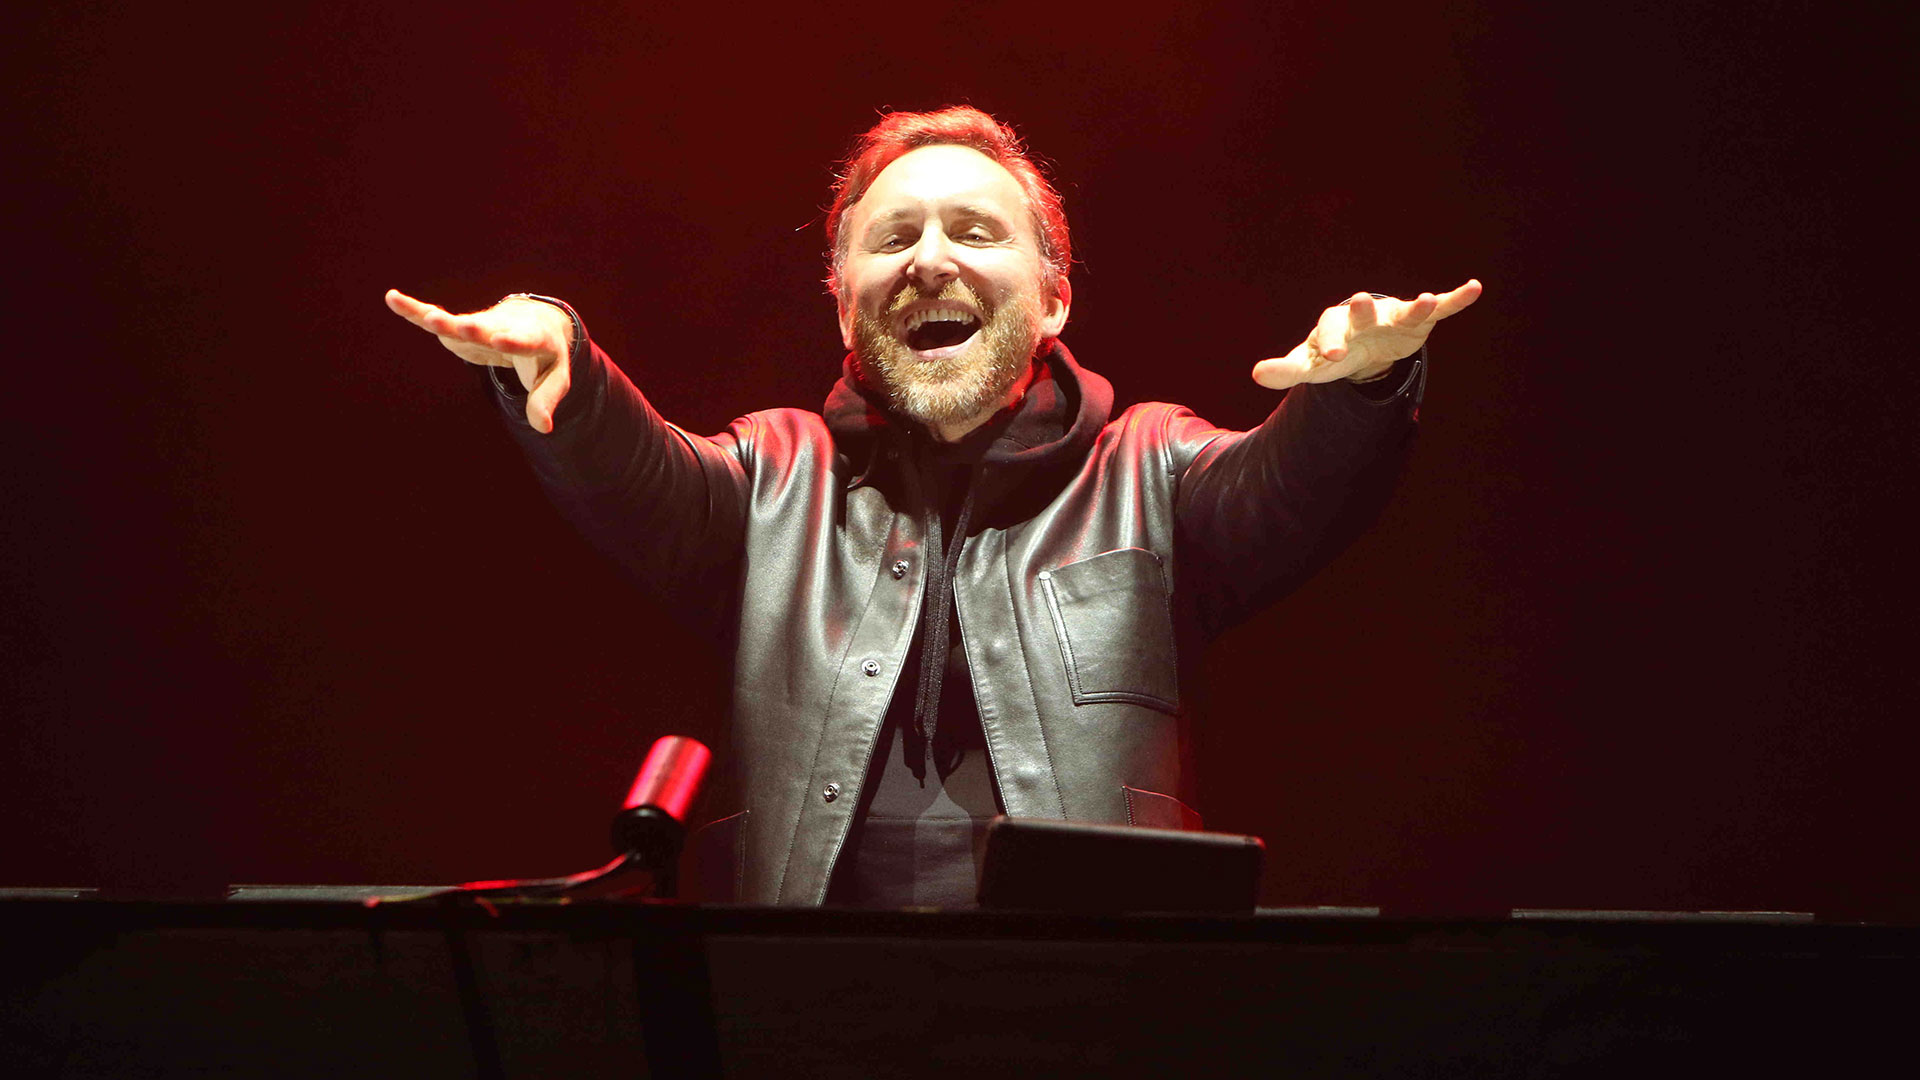 David Guetta ha sido votado en tres ocasiones como el DJ número uno en la encuesta DJ Mag Top 100 DJ. (RS Fotos)